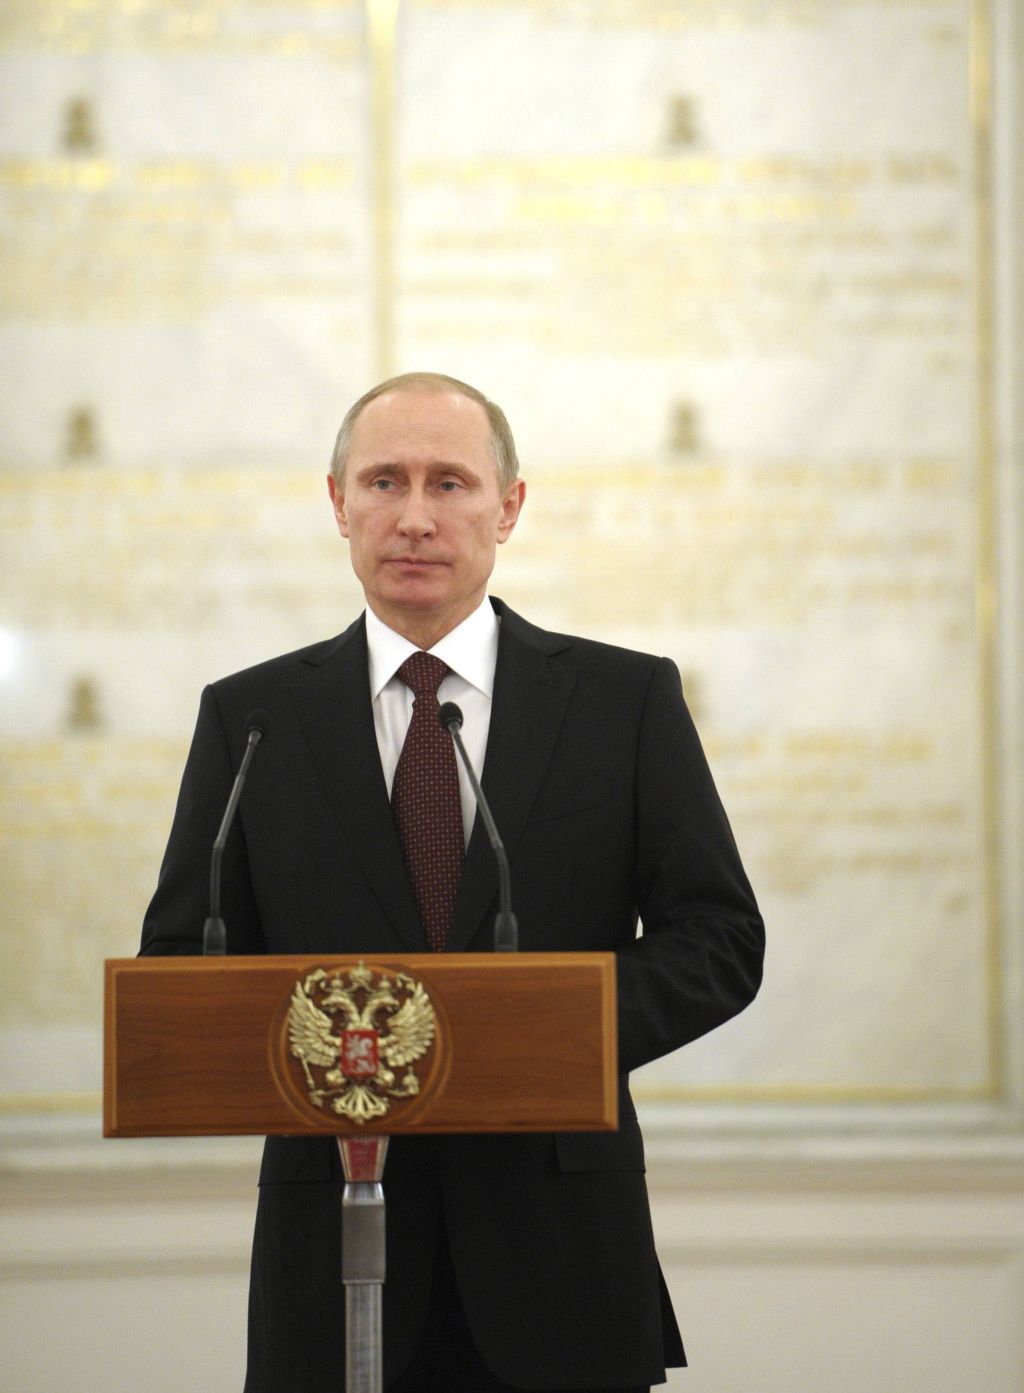 Prerokba babe Vange: Putin bo gospodar sveta